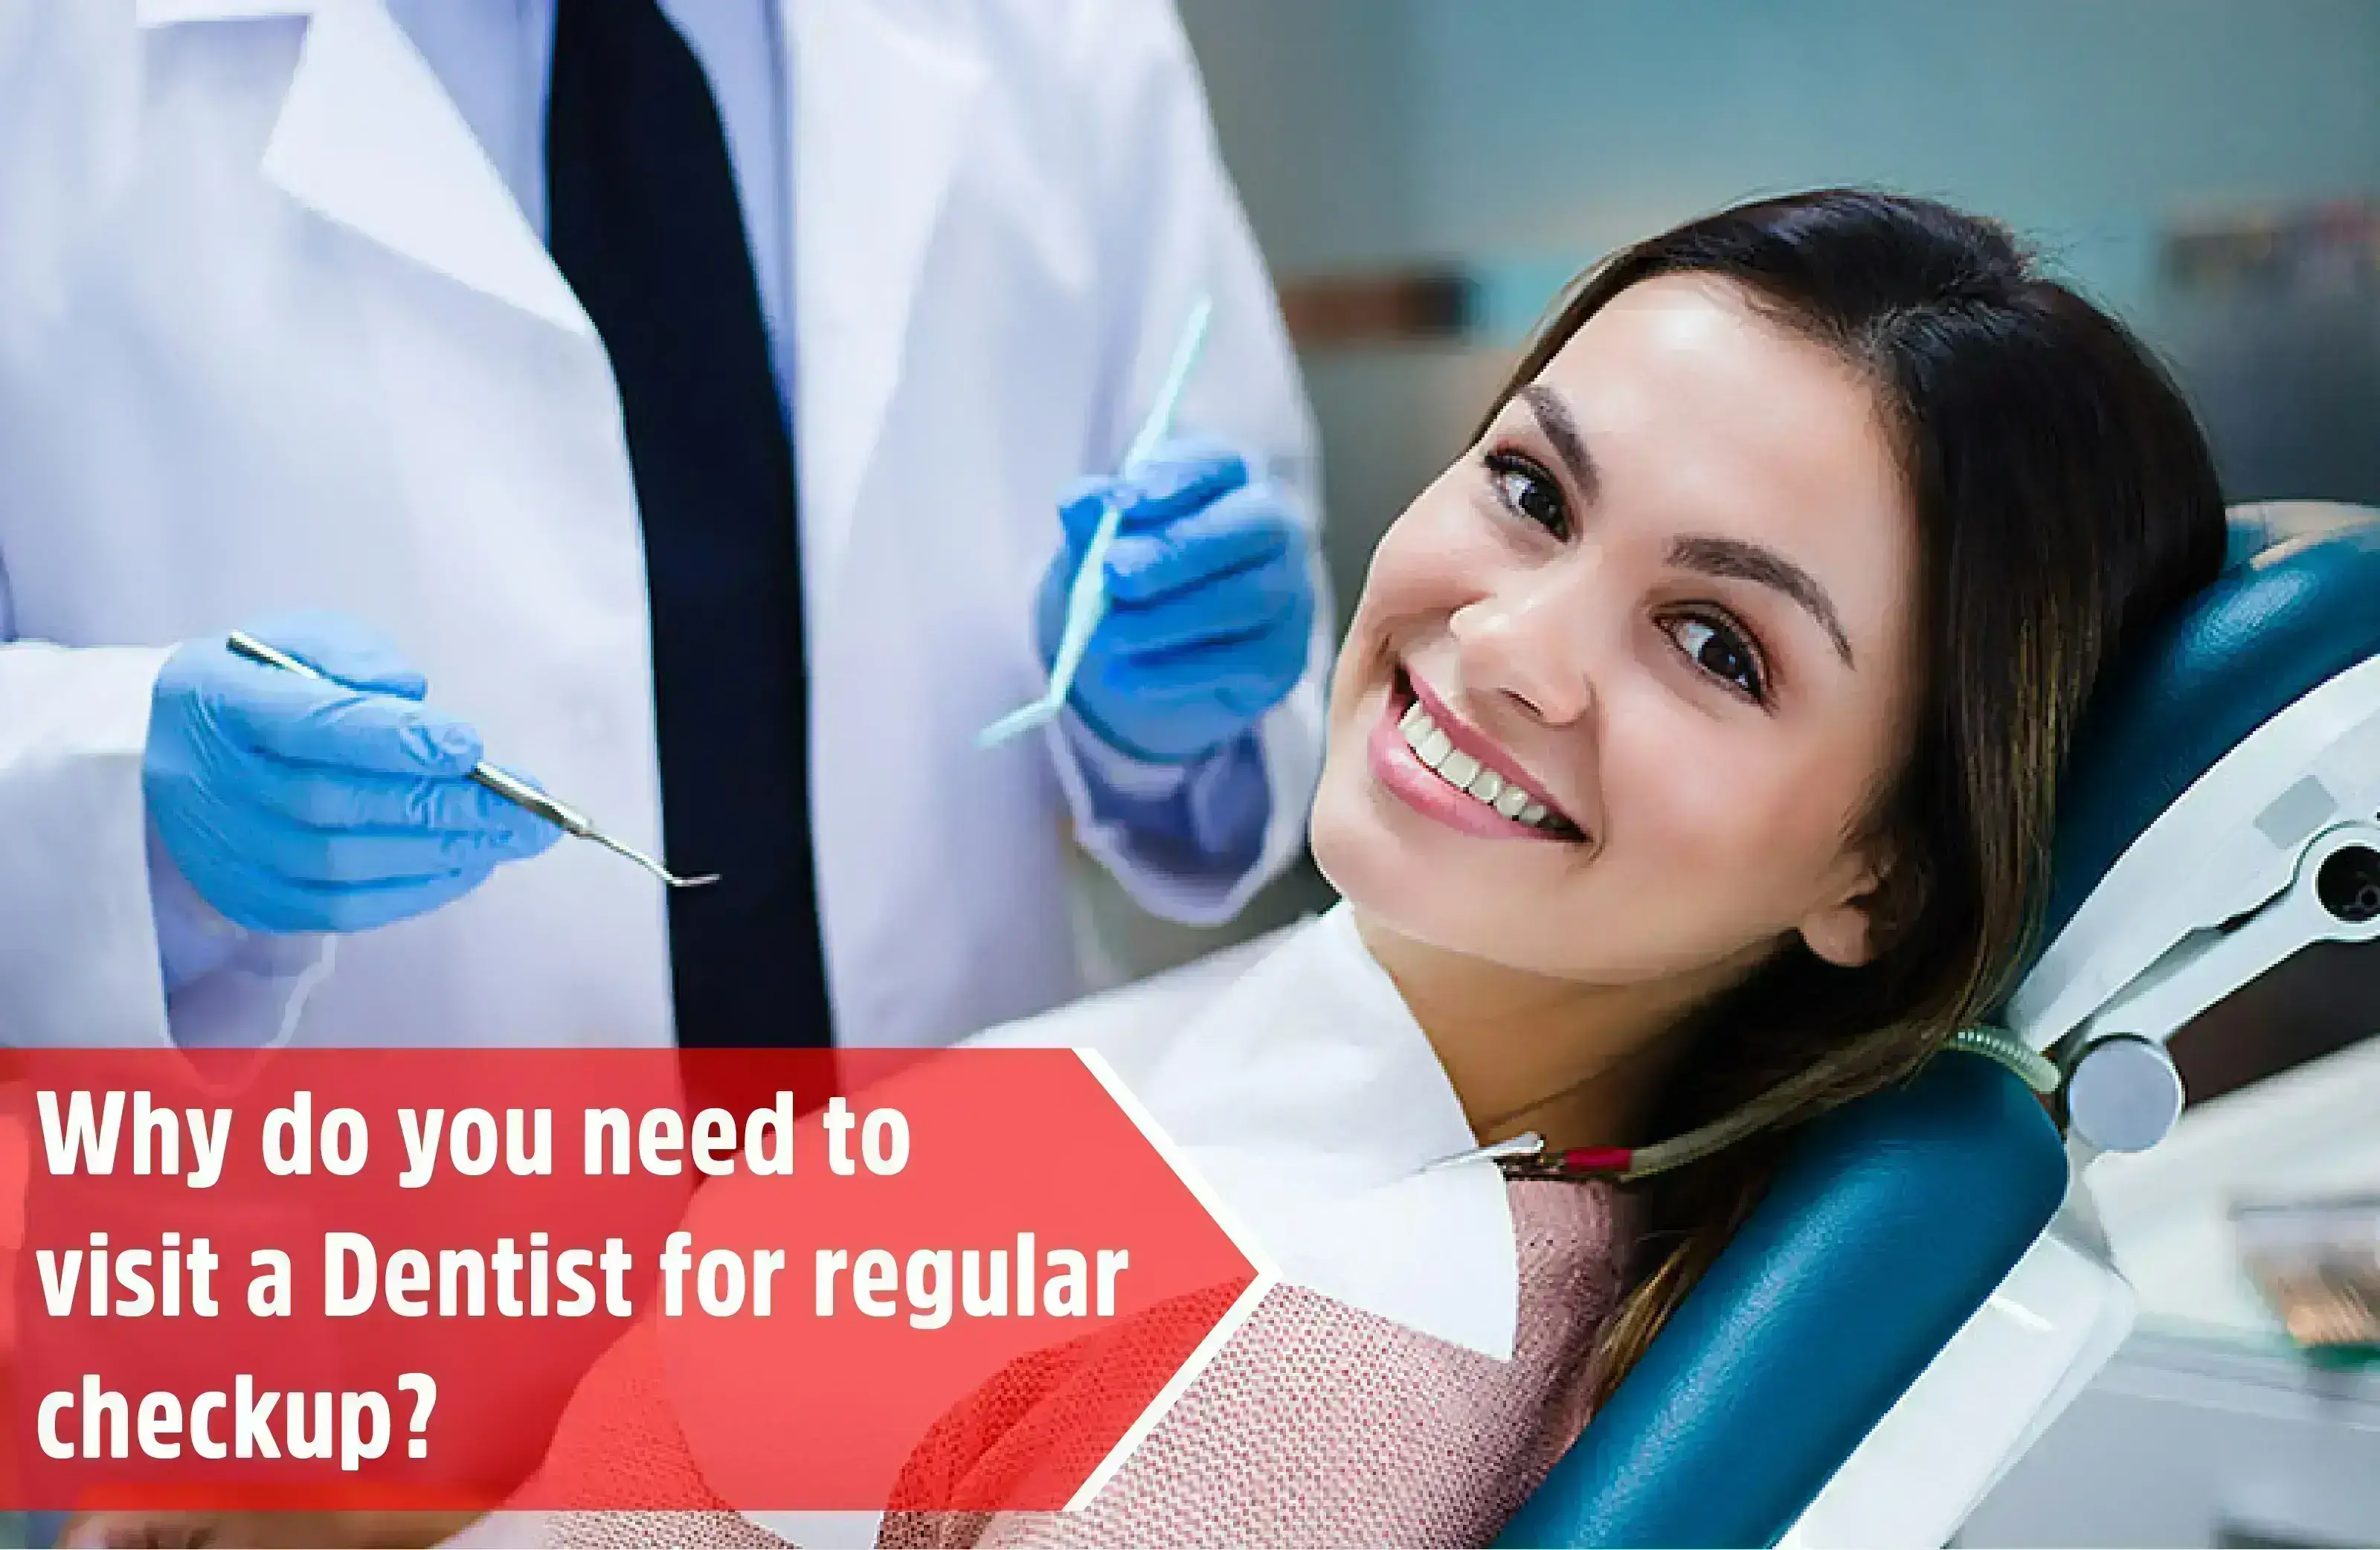 Dentist for Dental checkup